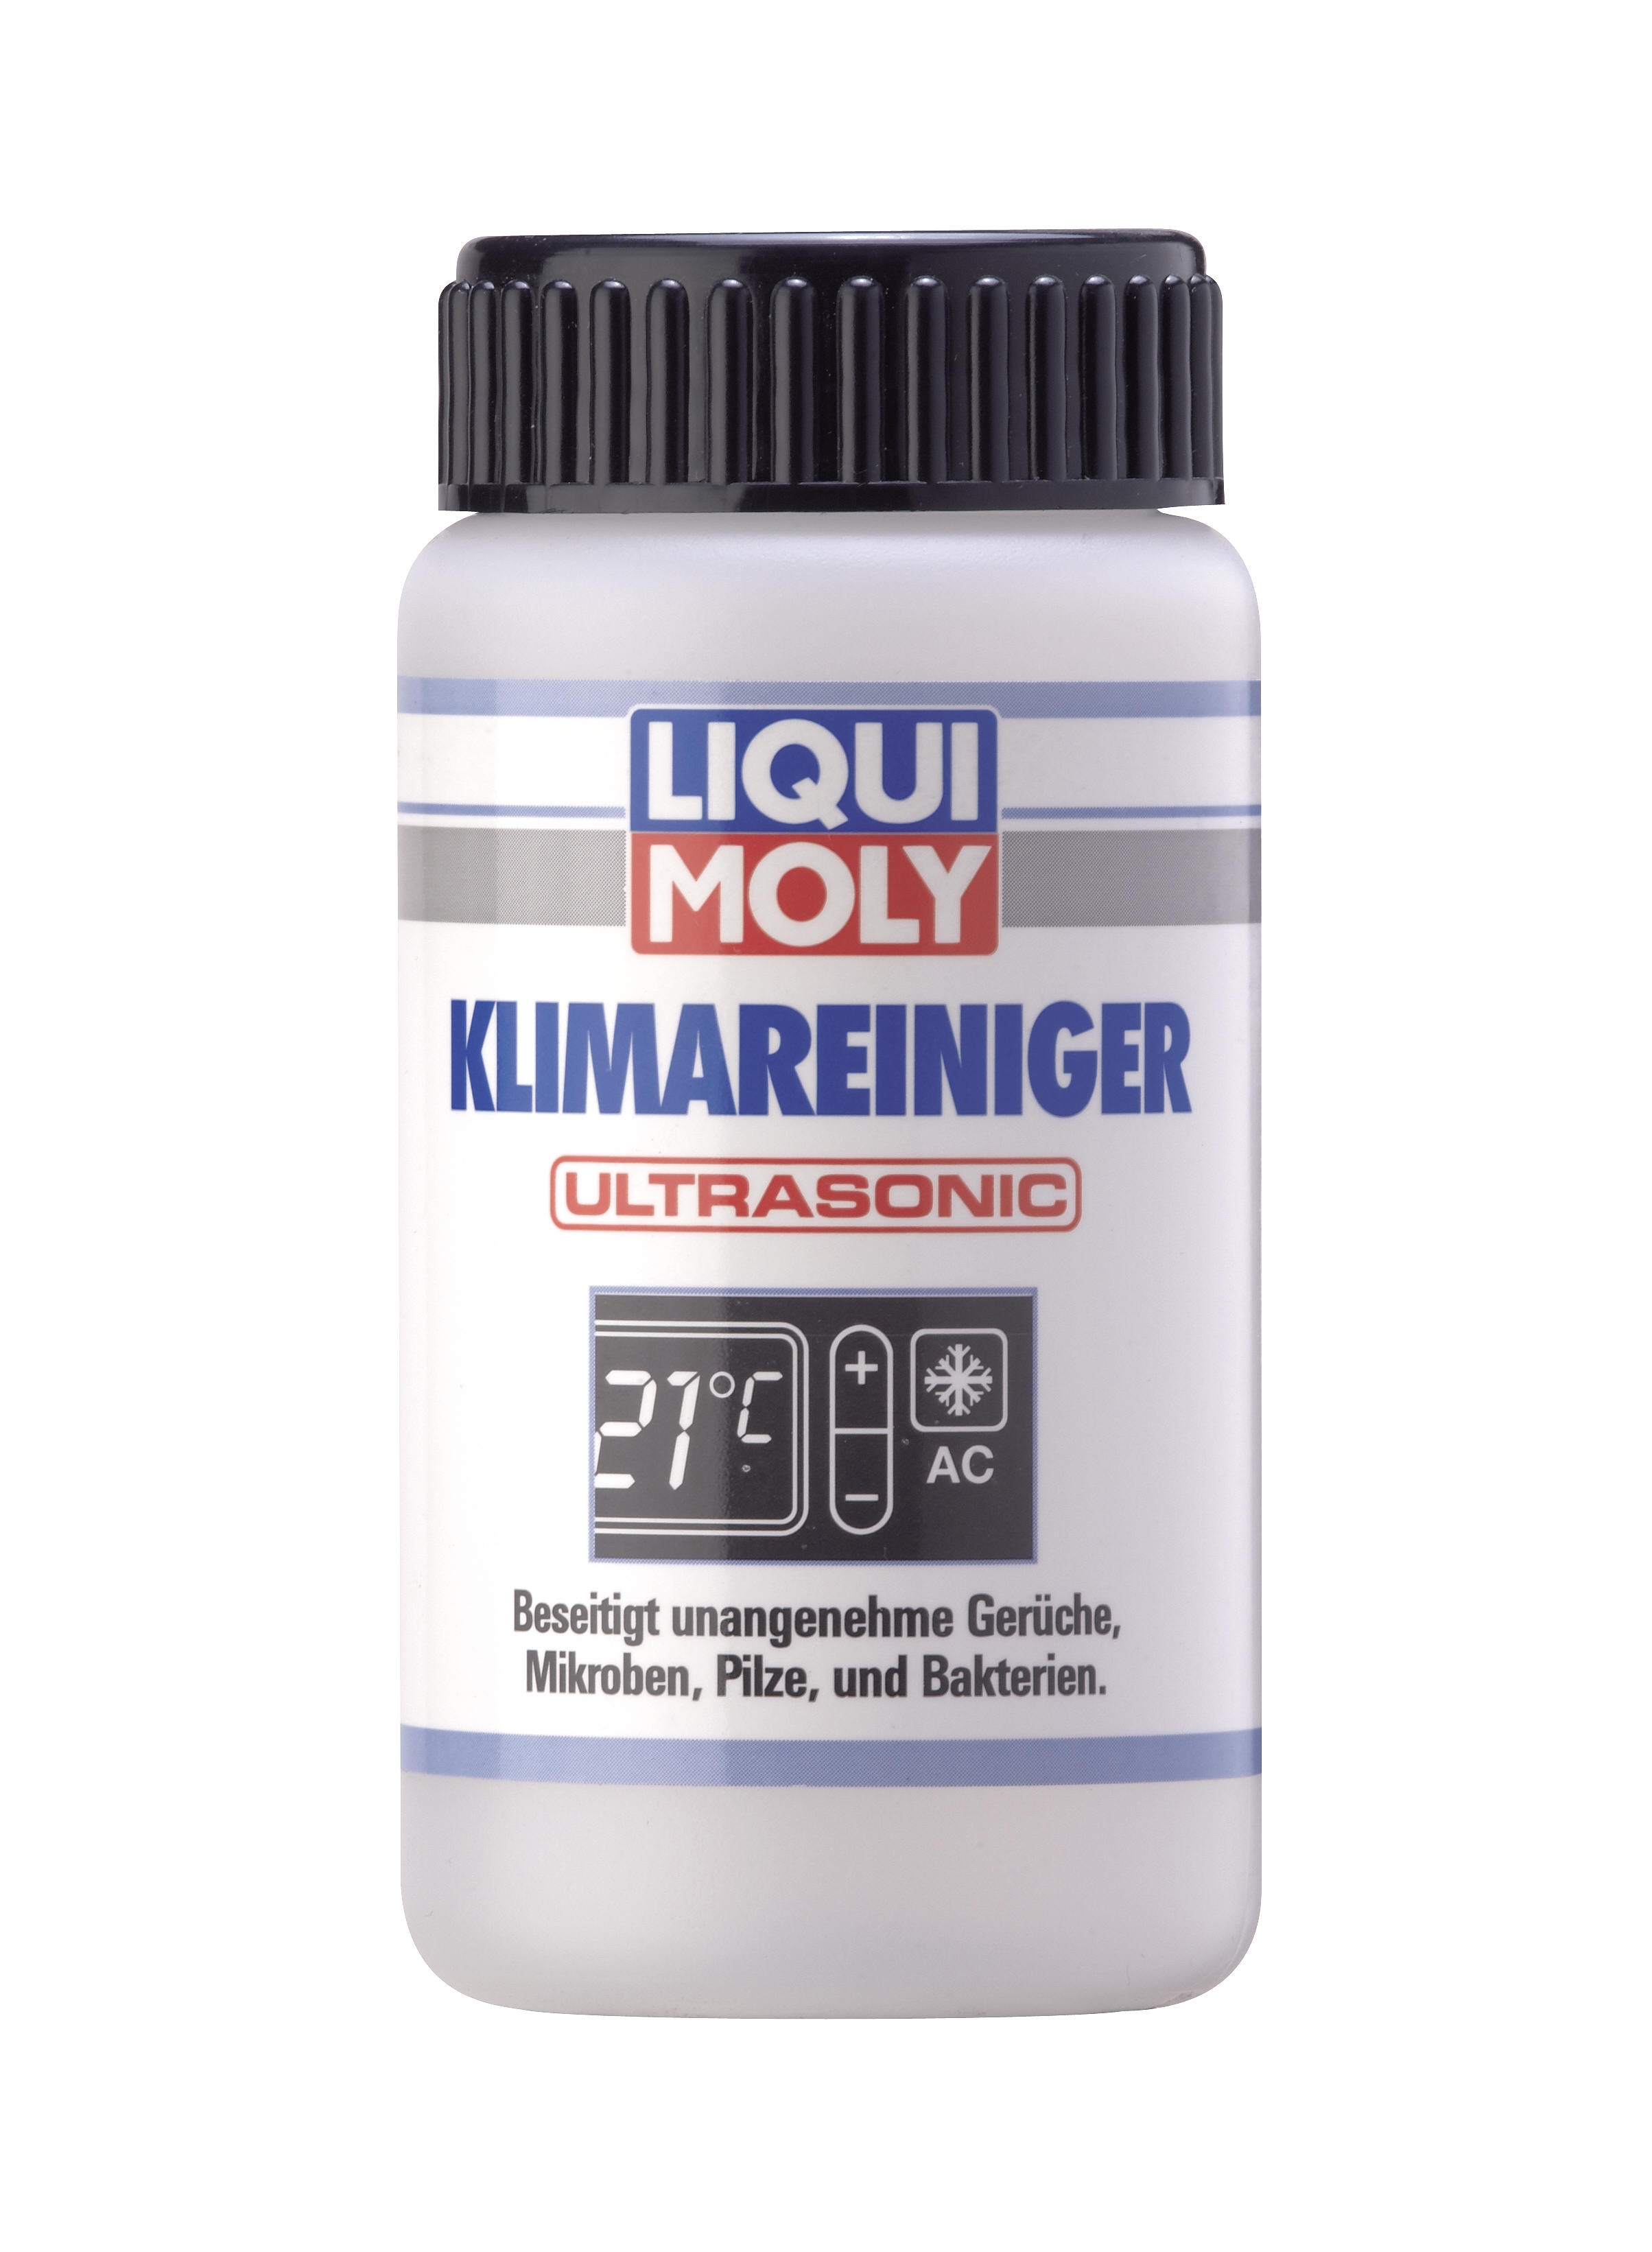 Жидкость для ультразвуковой очистки кондиционера Liqui Moly Klimareiniger Ultrasonic